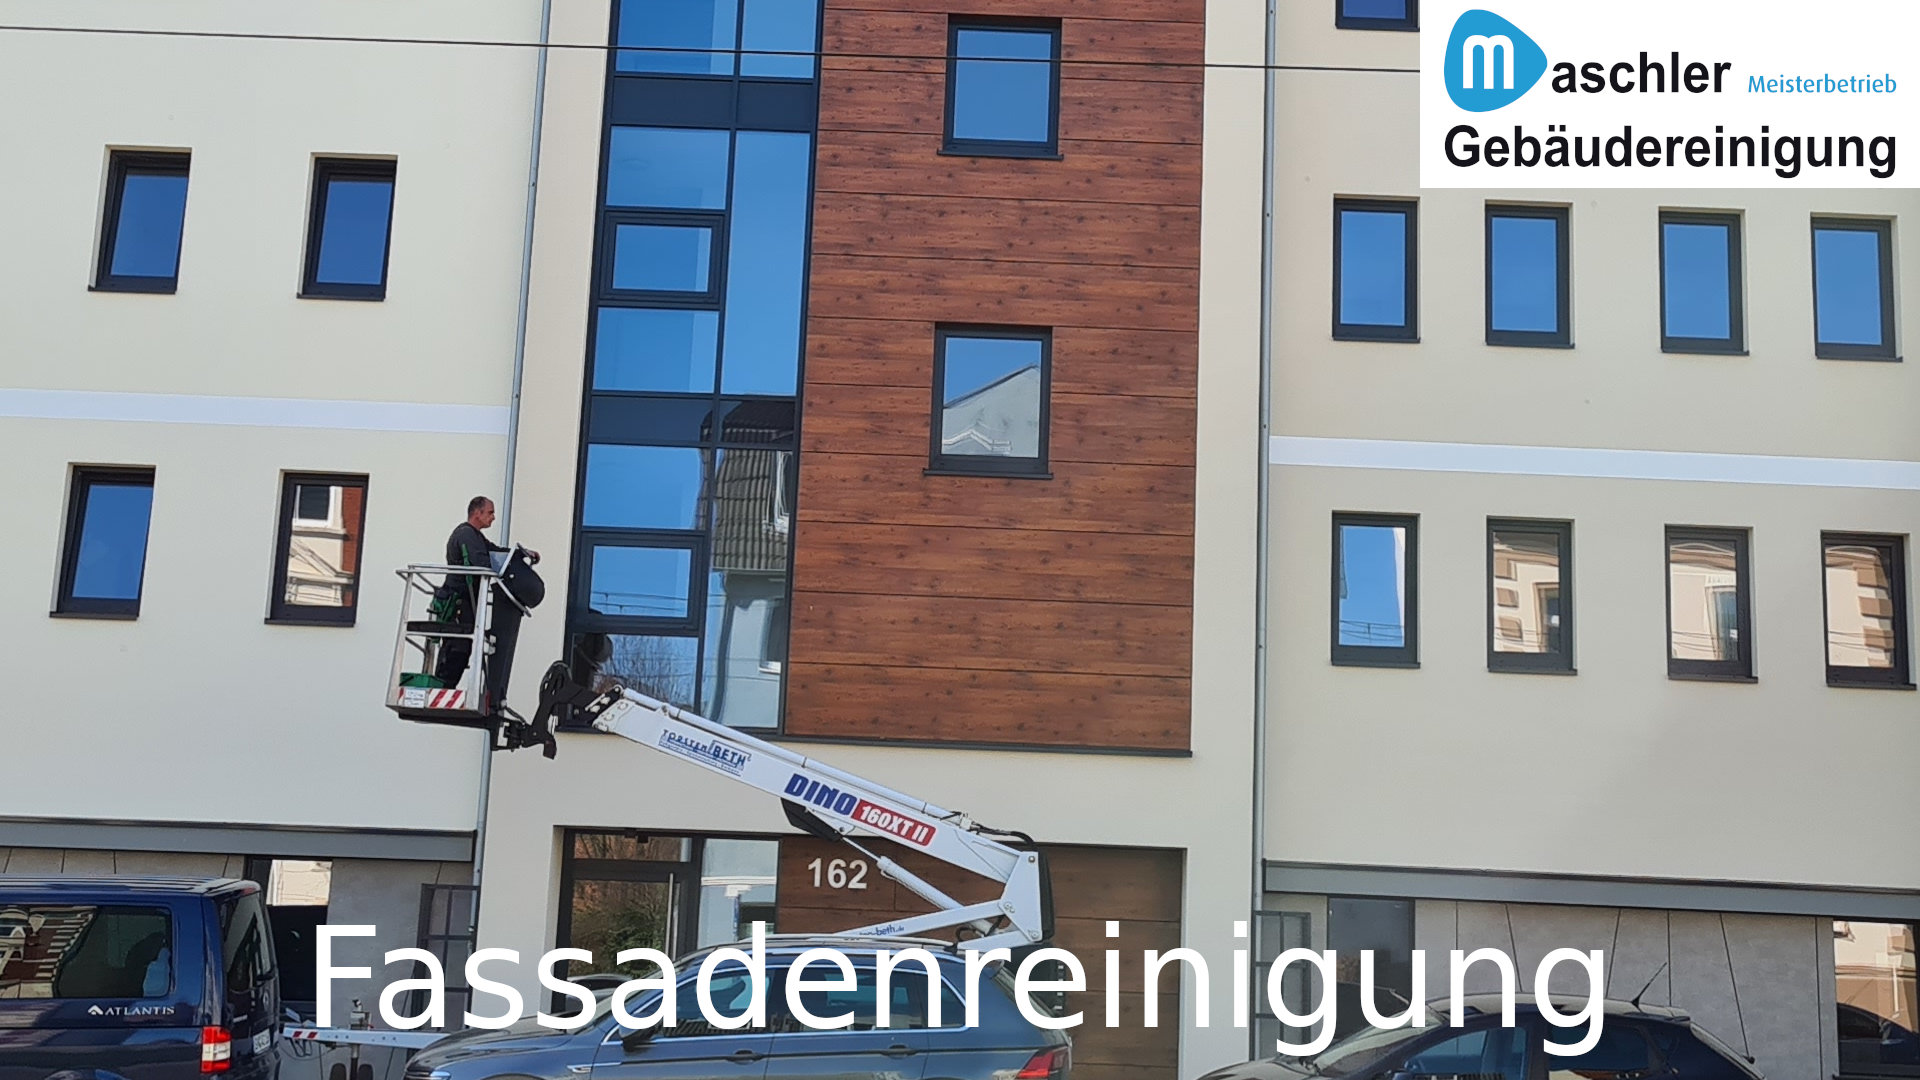 Fassadenreinigung - Gebäudereinigung Maschler GmbH